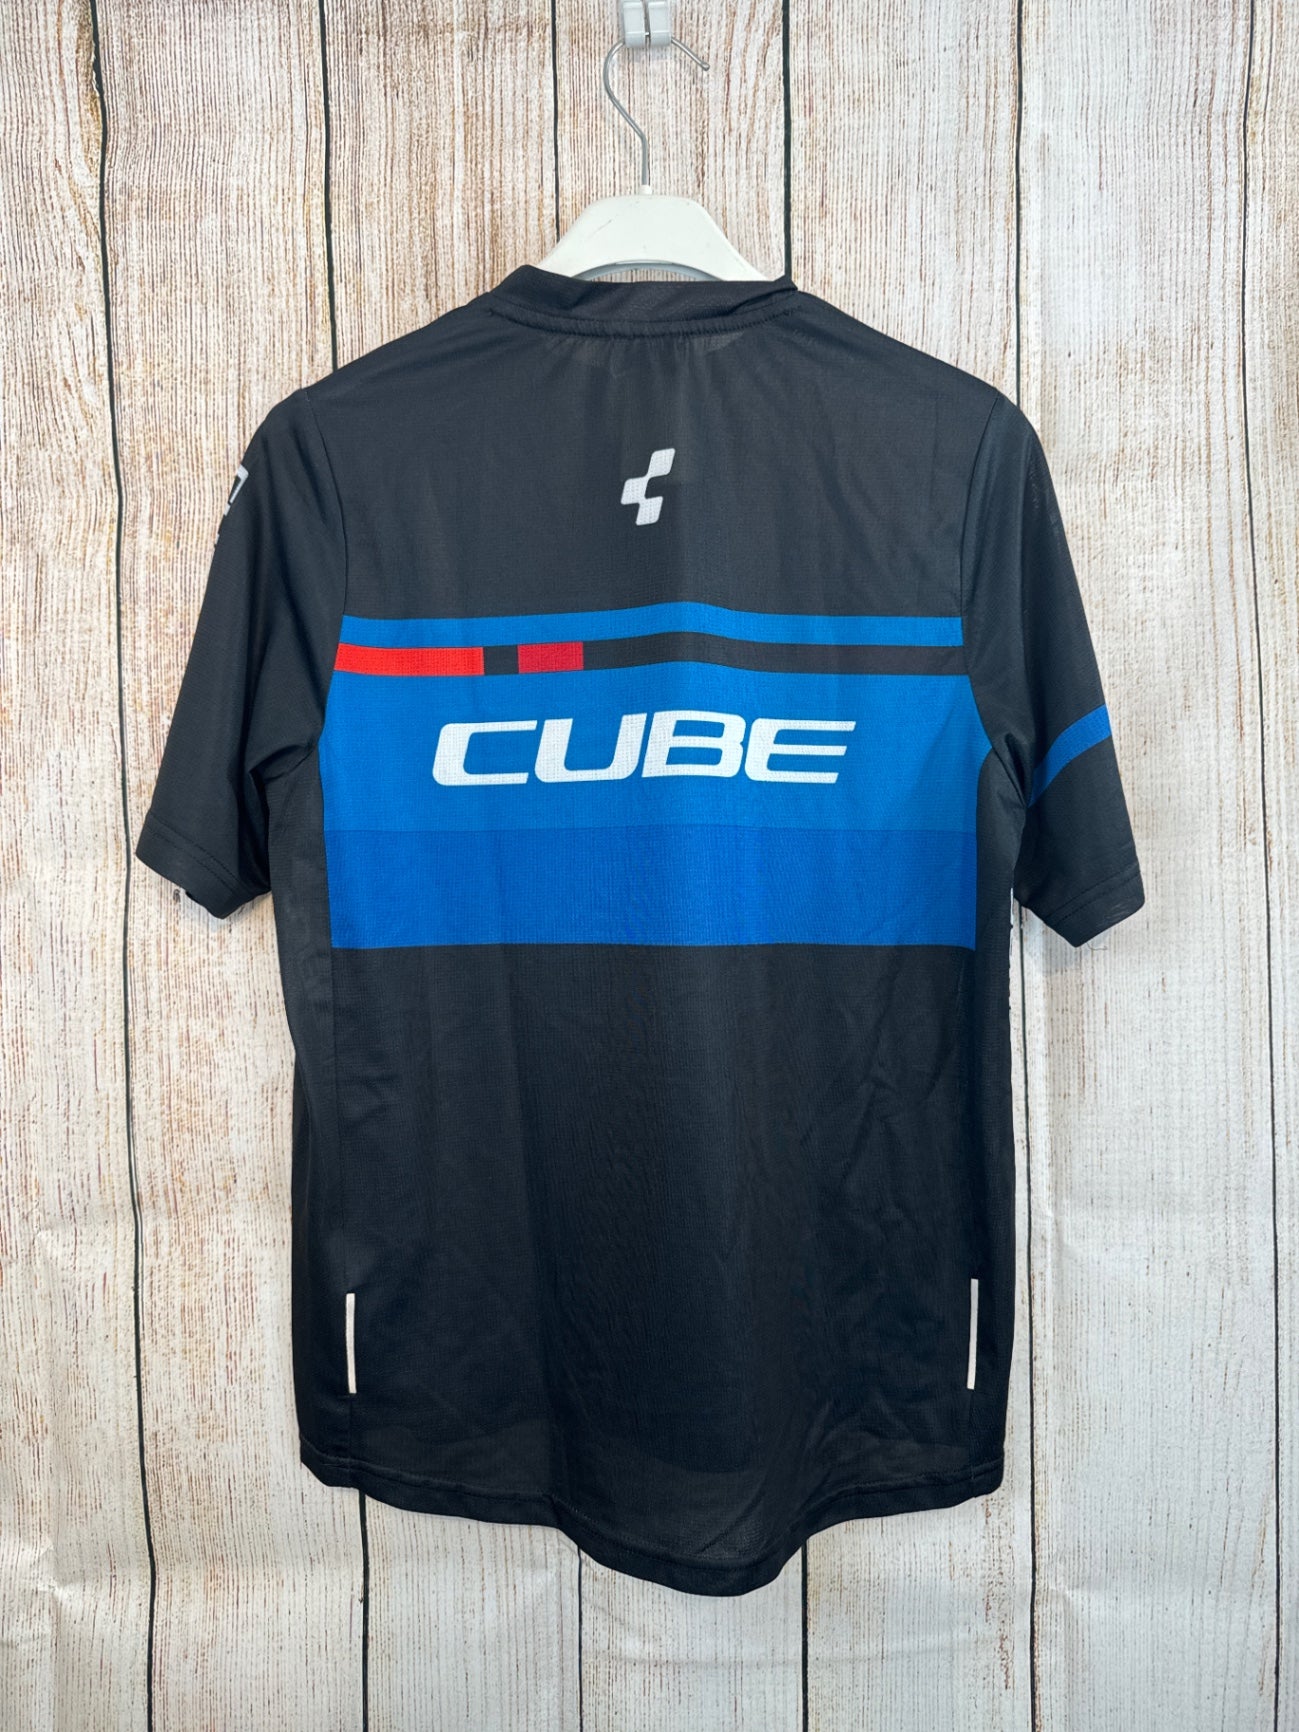 Cube Fahrradshirt schwarz/ blau m. weißer Schrift Gr. 158